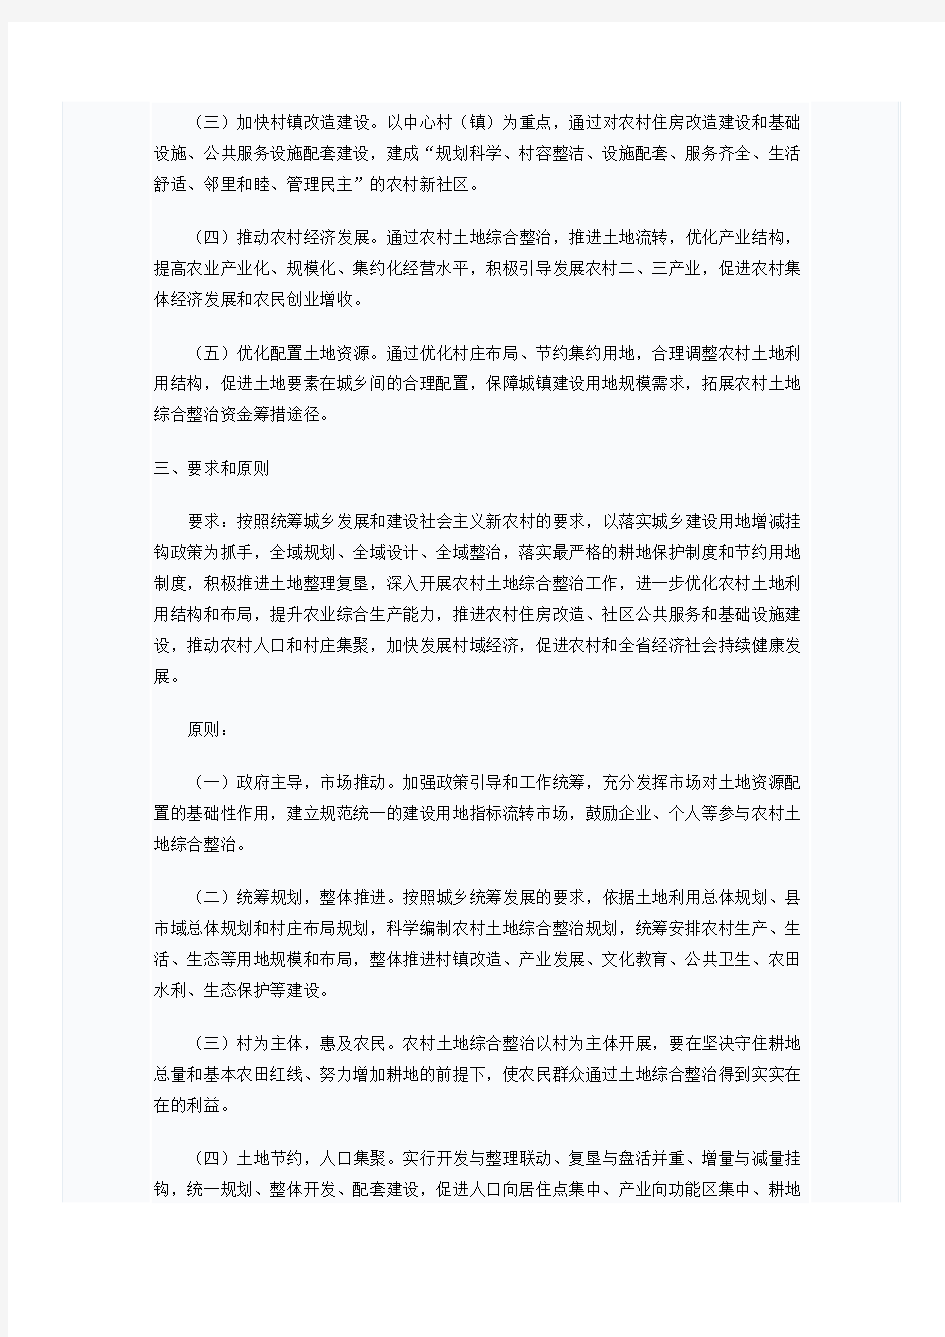 浙江省农村土地综合整治项目基本要求和做法